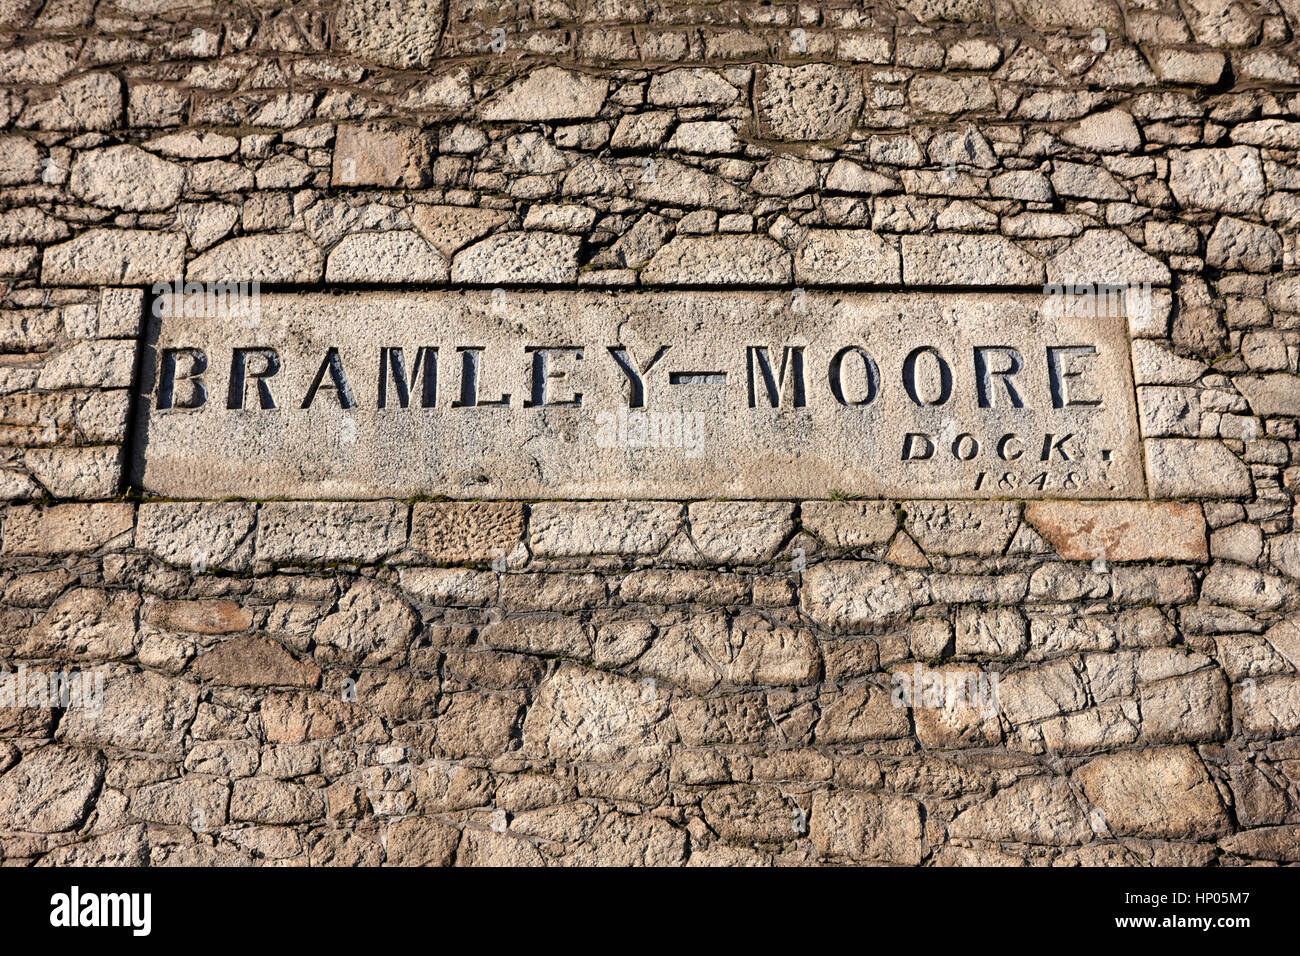 Bramley-moore dock docks de liverpool barrio Dockland uk Foto de stock